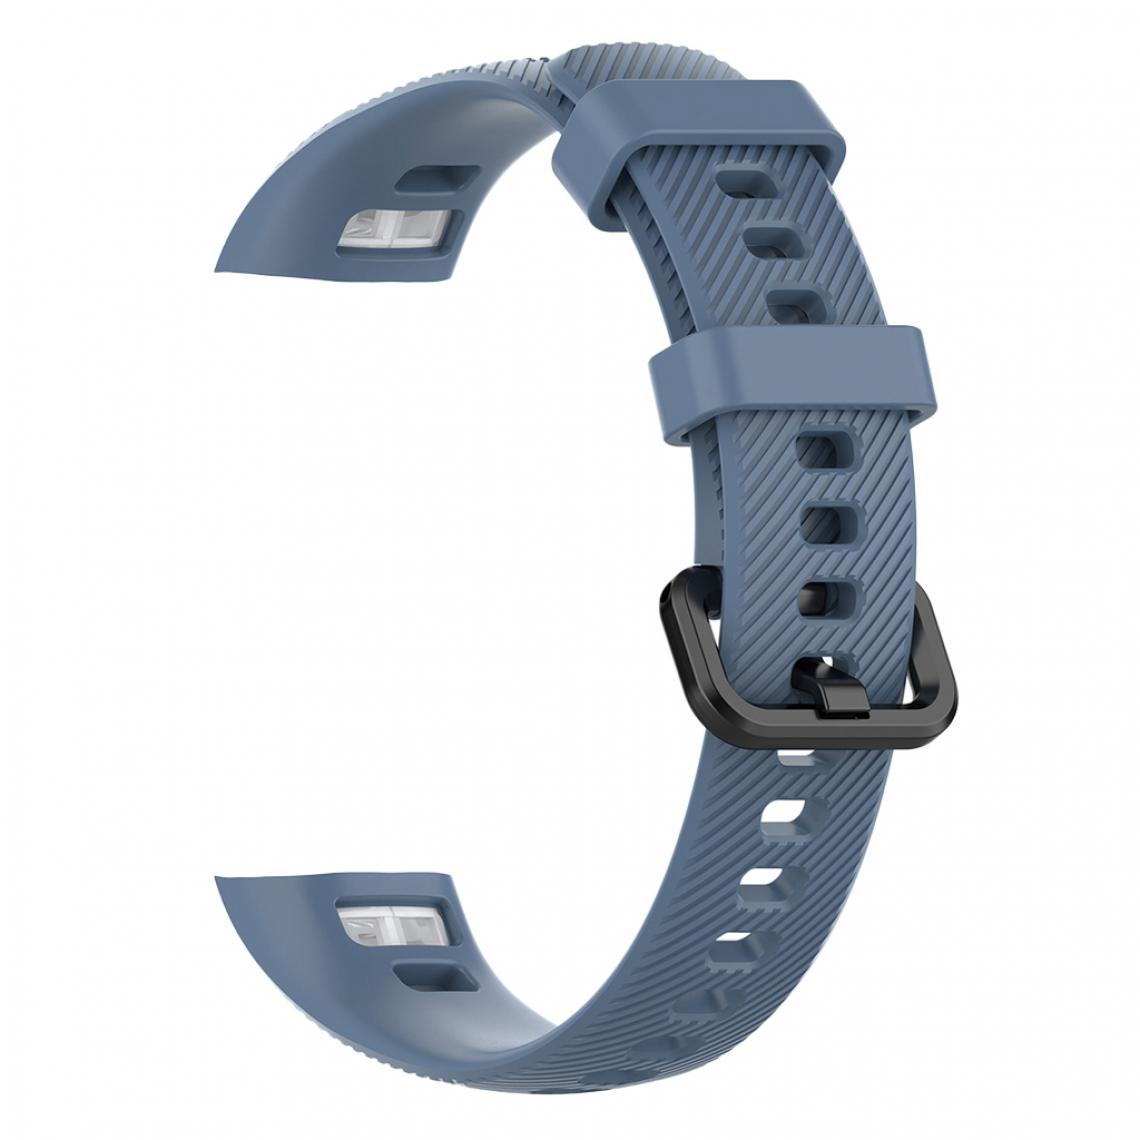 marque generique - Bracelet souple pour bracelet de rechange pour montre intelligente Huawei Honor 4, noir - Accessoires montres connectées